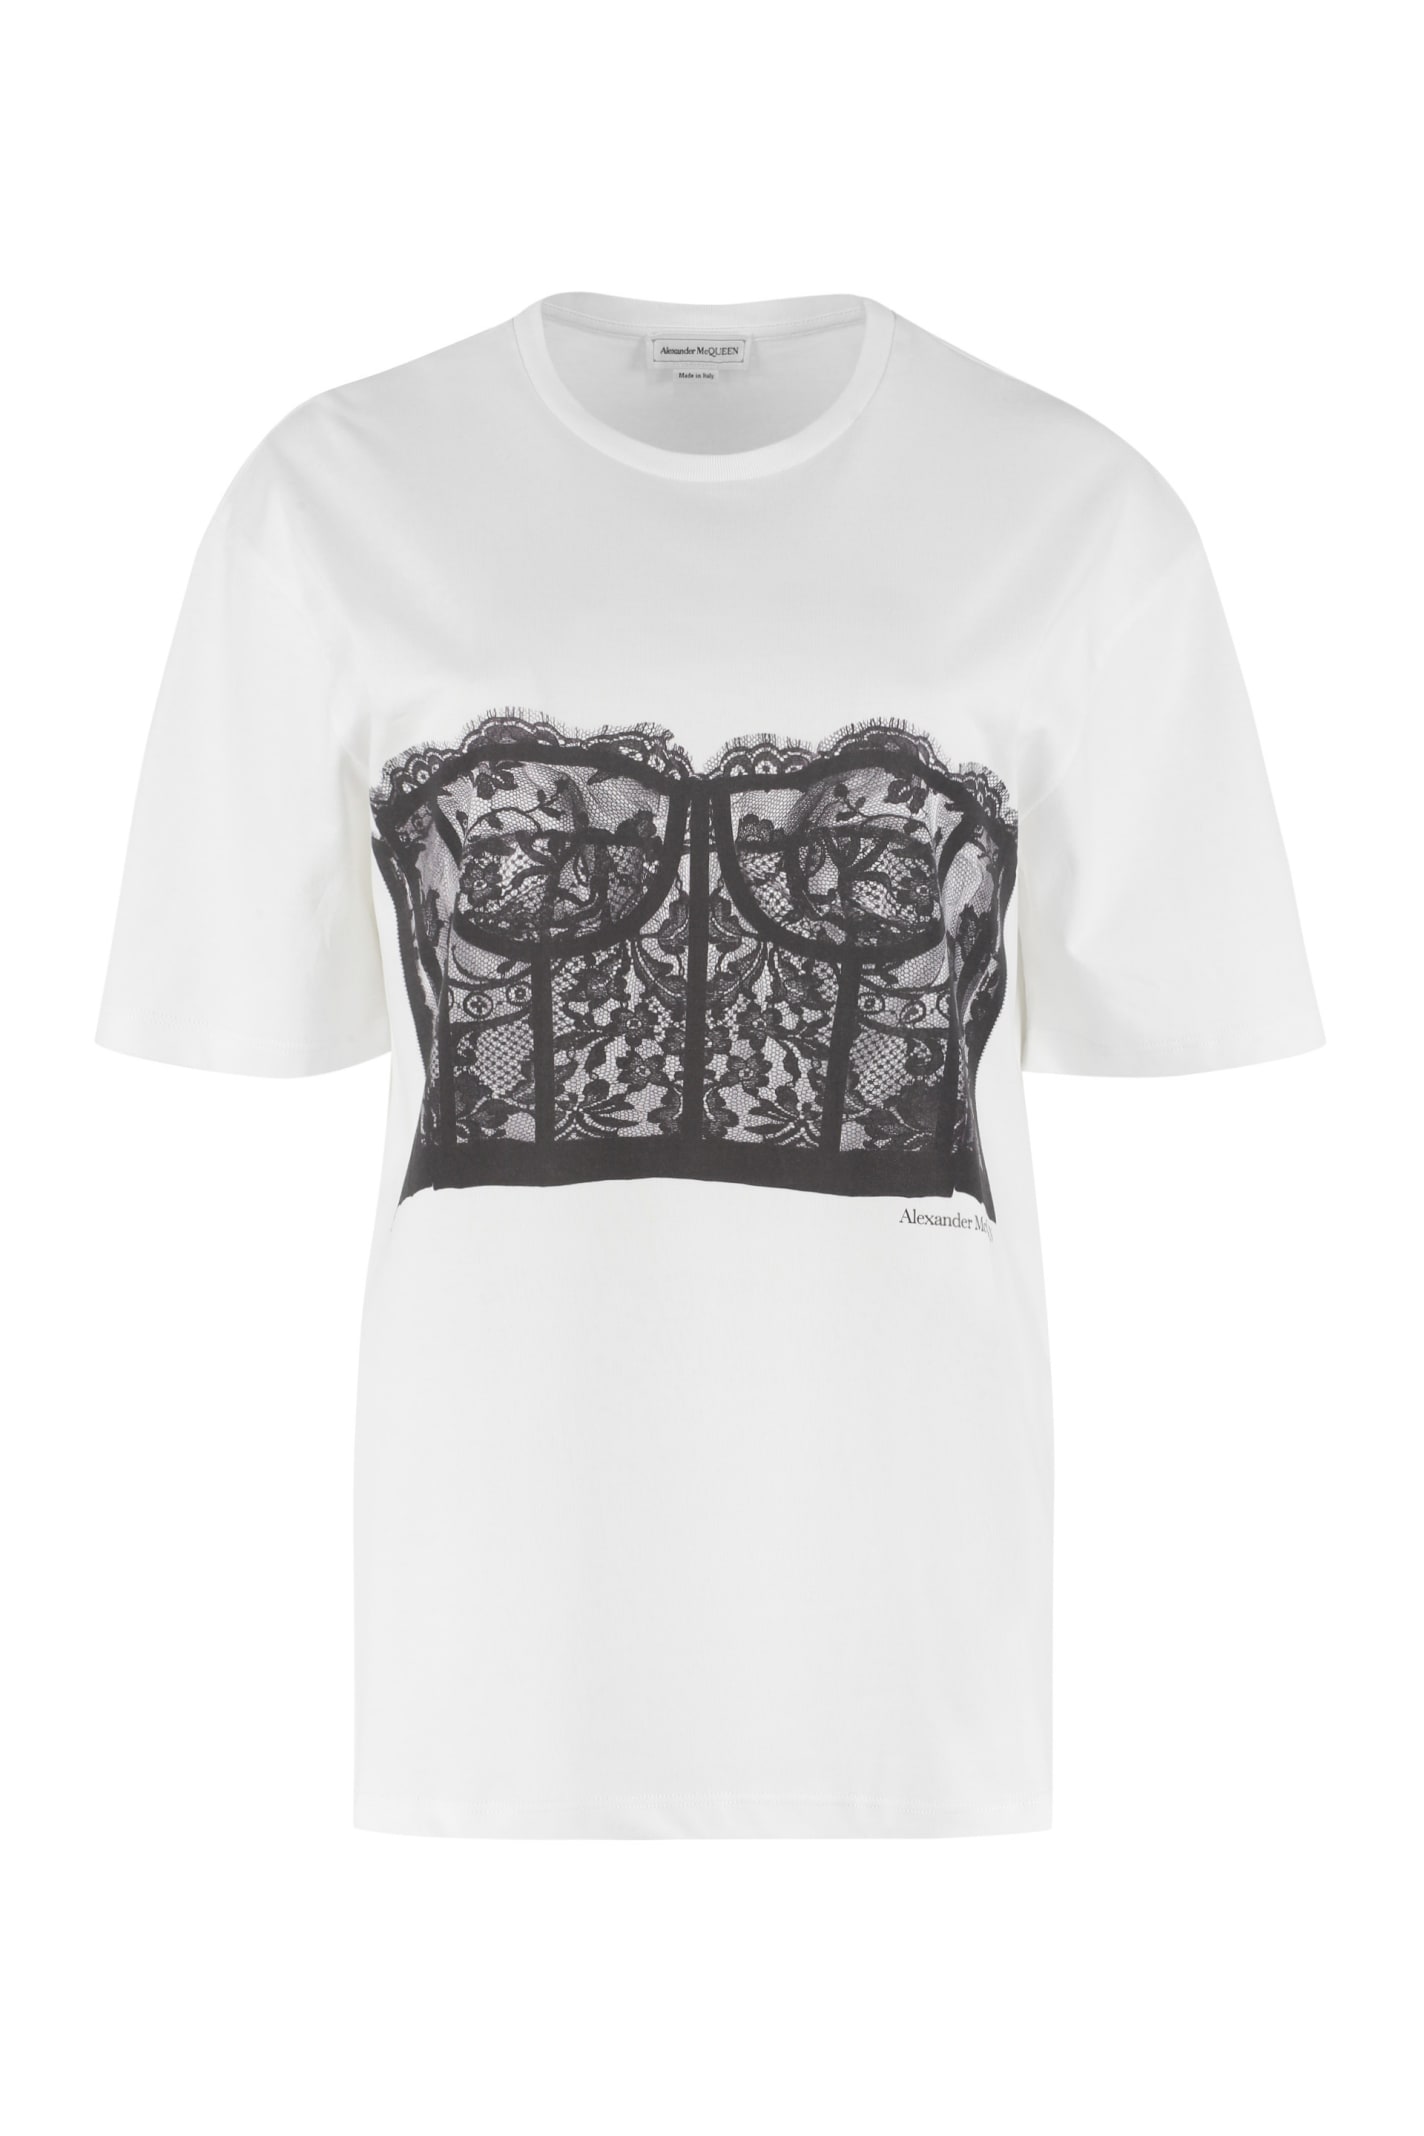 Alexander McQueen Printed Short Sleeve T-shirt